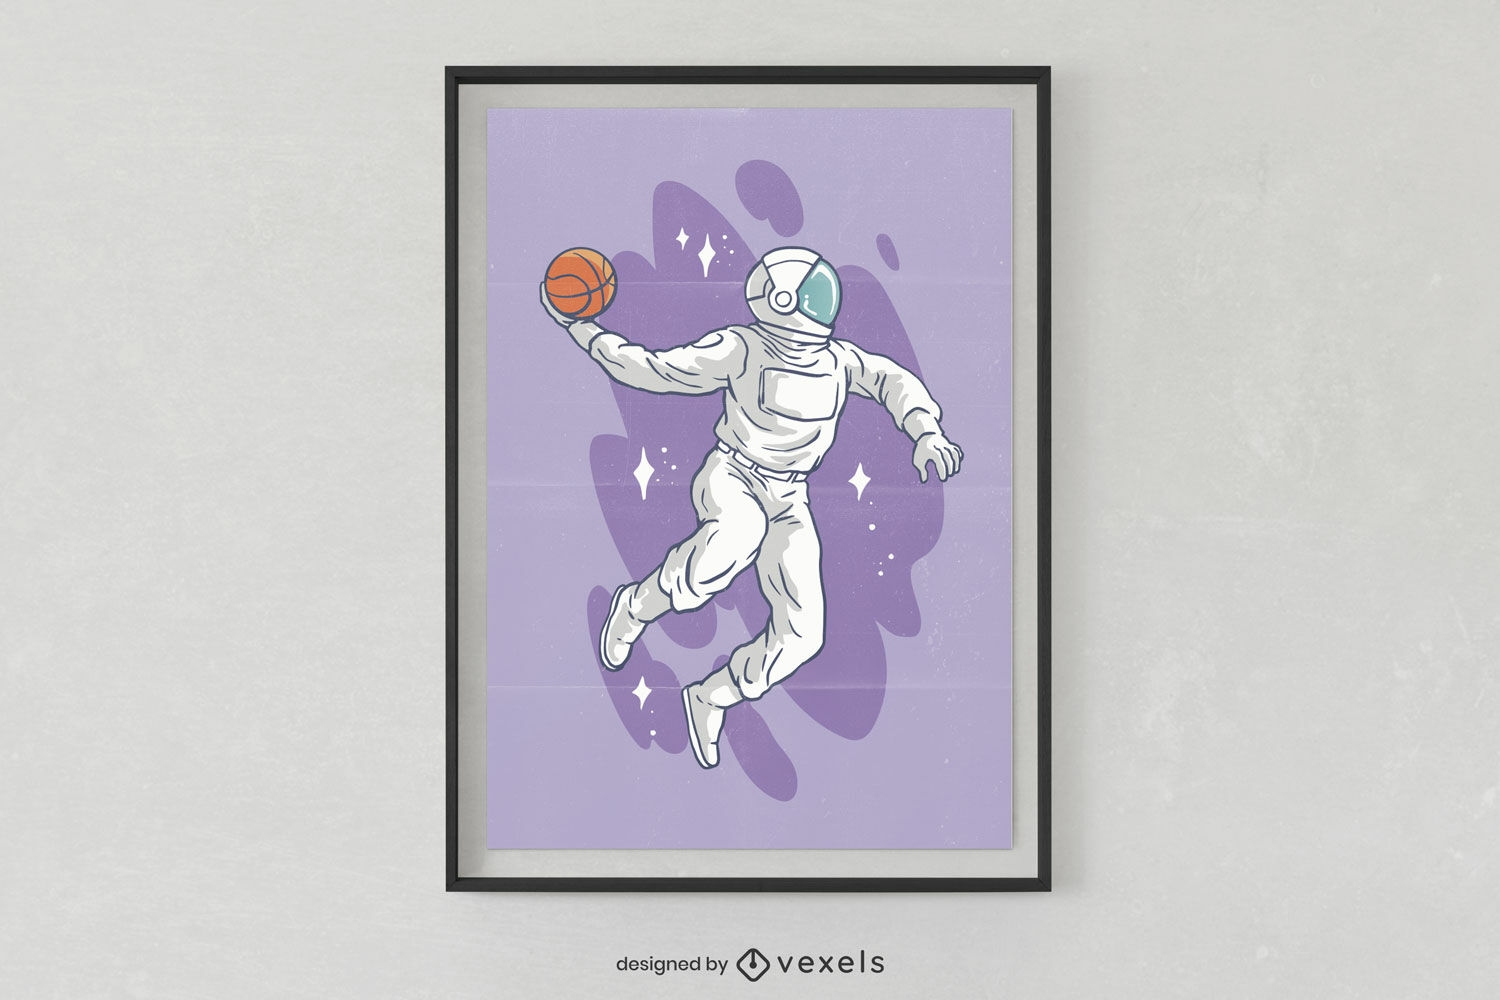 P?ster con un astronauta jugando al baloncesto.